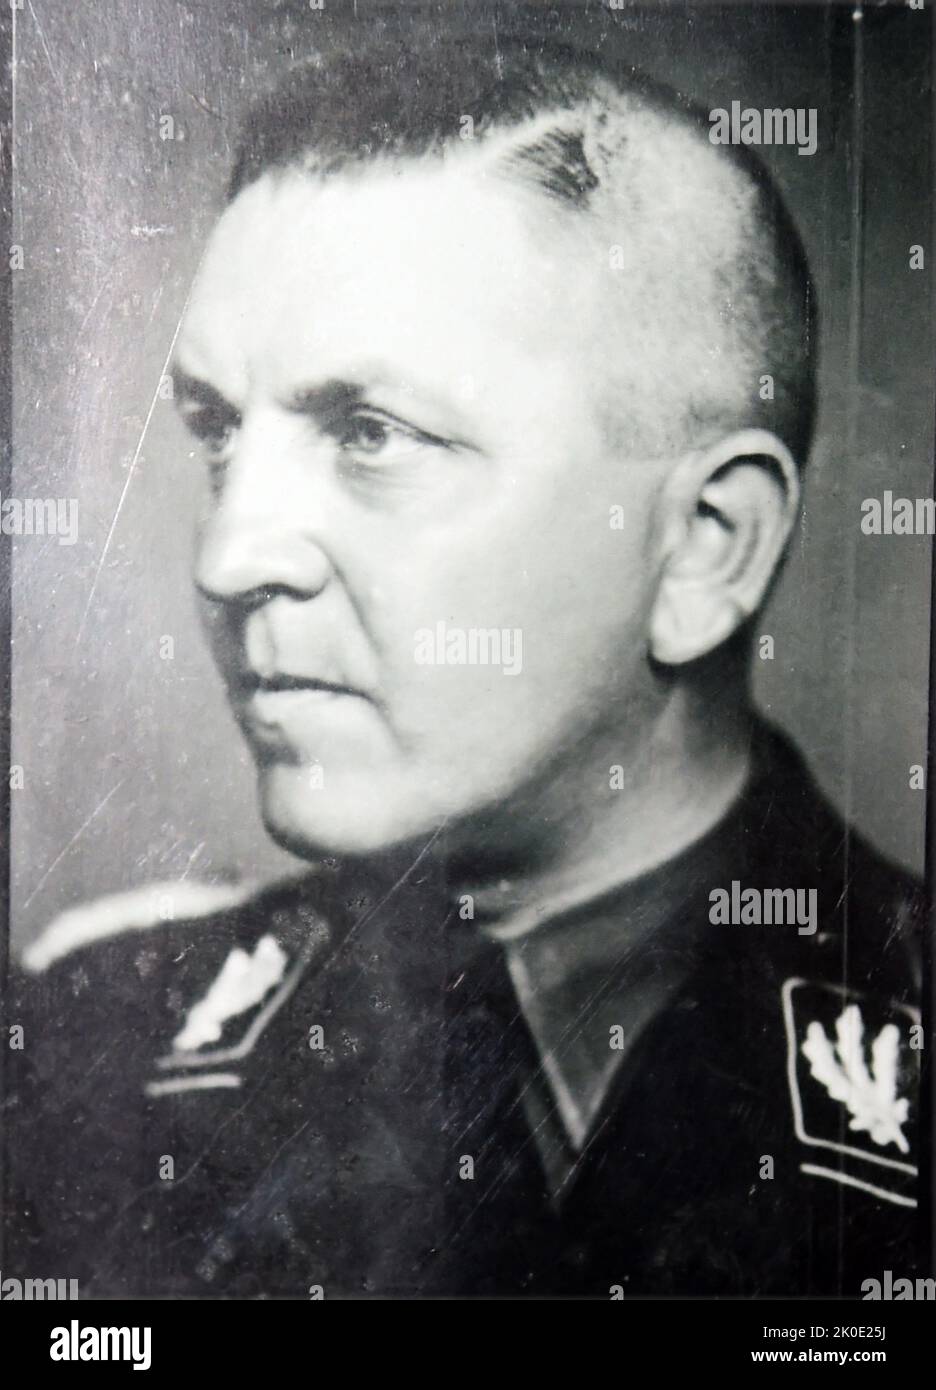 Theodor Eicke (1892 - 1943) fonctionnaire allemand SS pendant l'ère nazie. Il a été l'un des principaux acteurs du développement des camps de concentration nazis pendant l'Holocauste. Eicke a servi comme deuxième commandant du camp de concentration de Dachau de juin 1933 à juillet 1934, et avec son adjudant Michael Lippert, a été l'un des exécuteurs du chef de sa Ernst Rohm pendant la nuit de la purge de long Knives. Banque D'Images